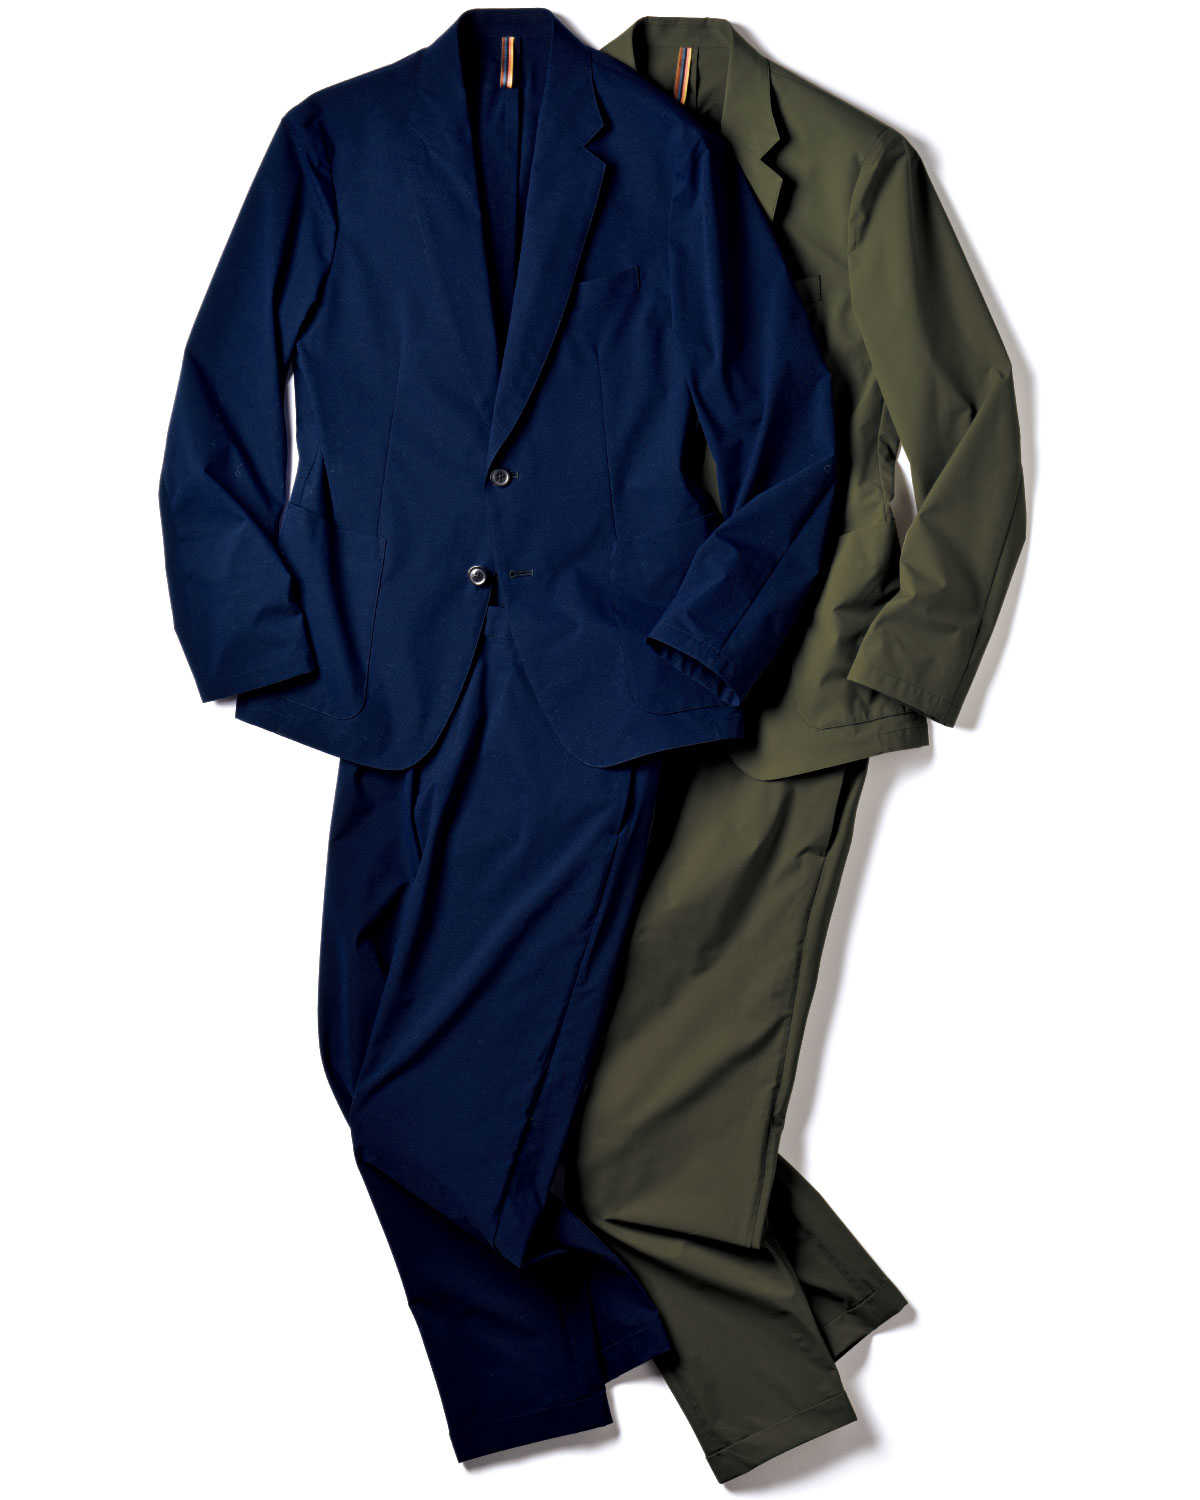 ポール・スミス〉の１着があれば、休日姿もワンランク上に！使えるセットアップで変幻自在な男になる！ Fashion Safari Online